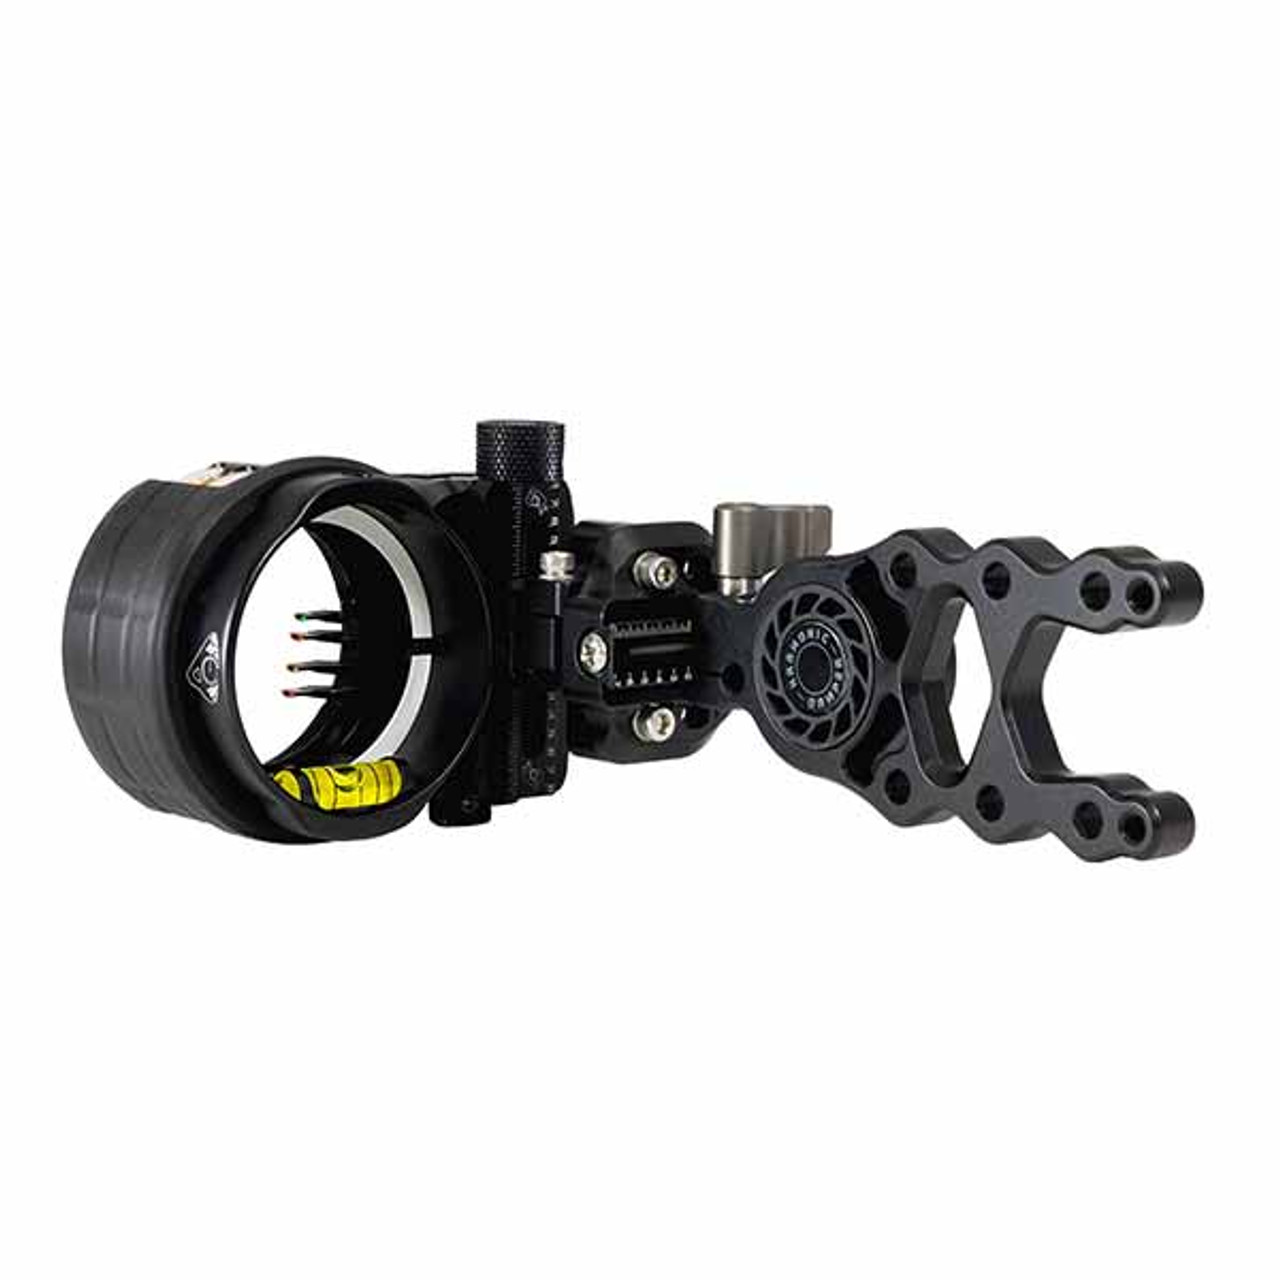 Axcel Rheo-Tech HD Sight - 4-Pin - .019 - Black AXRT-D419-BK